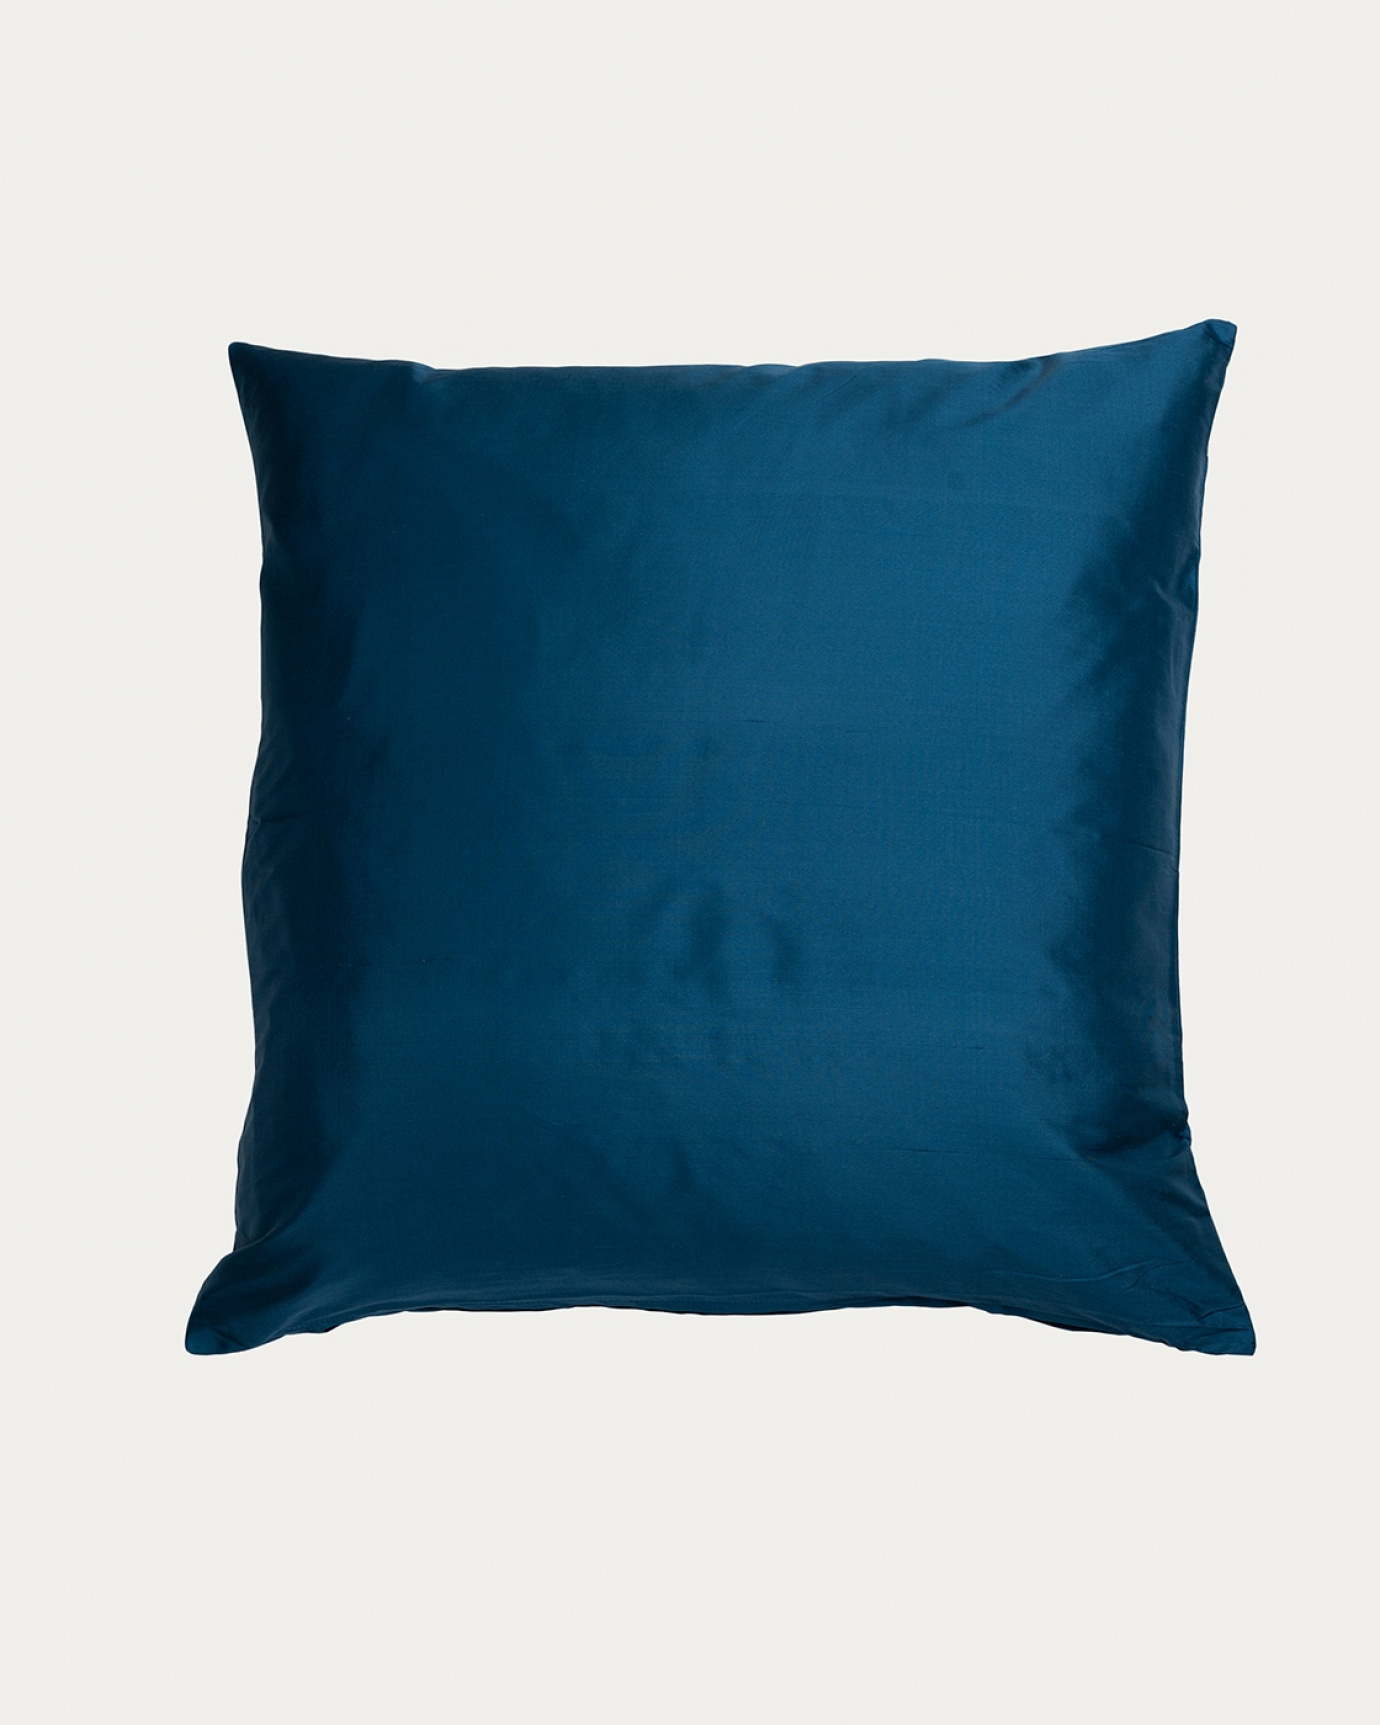 Immagine prodotto blu mare profondo SILK copricuscini realizzata in 100% seta dupion grezza che dona una bella lucentezza da LINUM DESIGN. Dimensioni 50x50 cm.